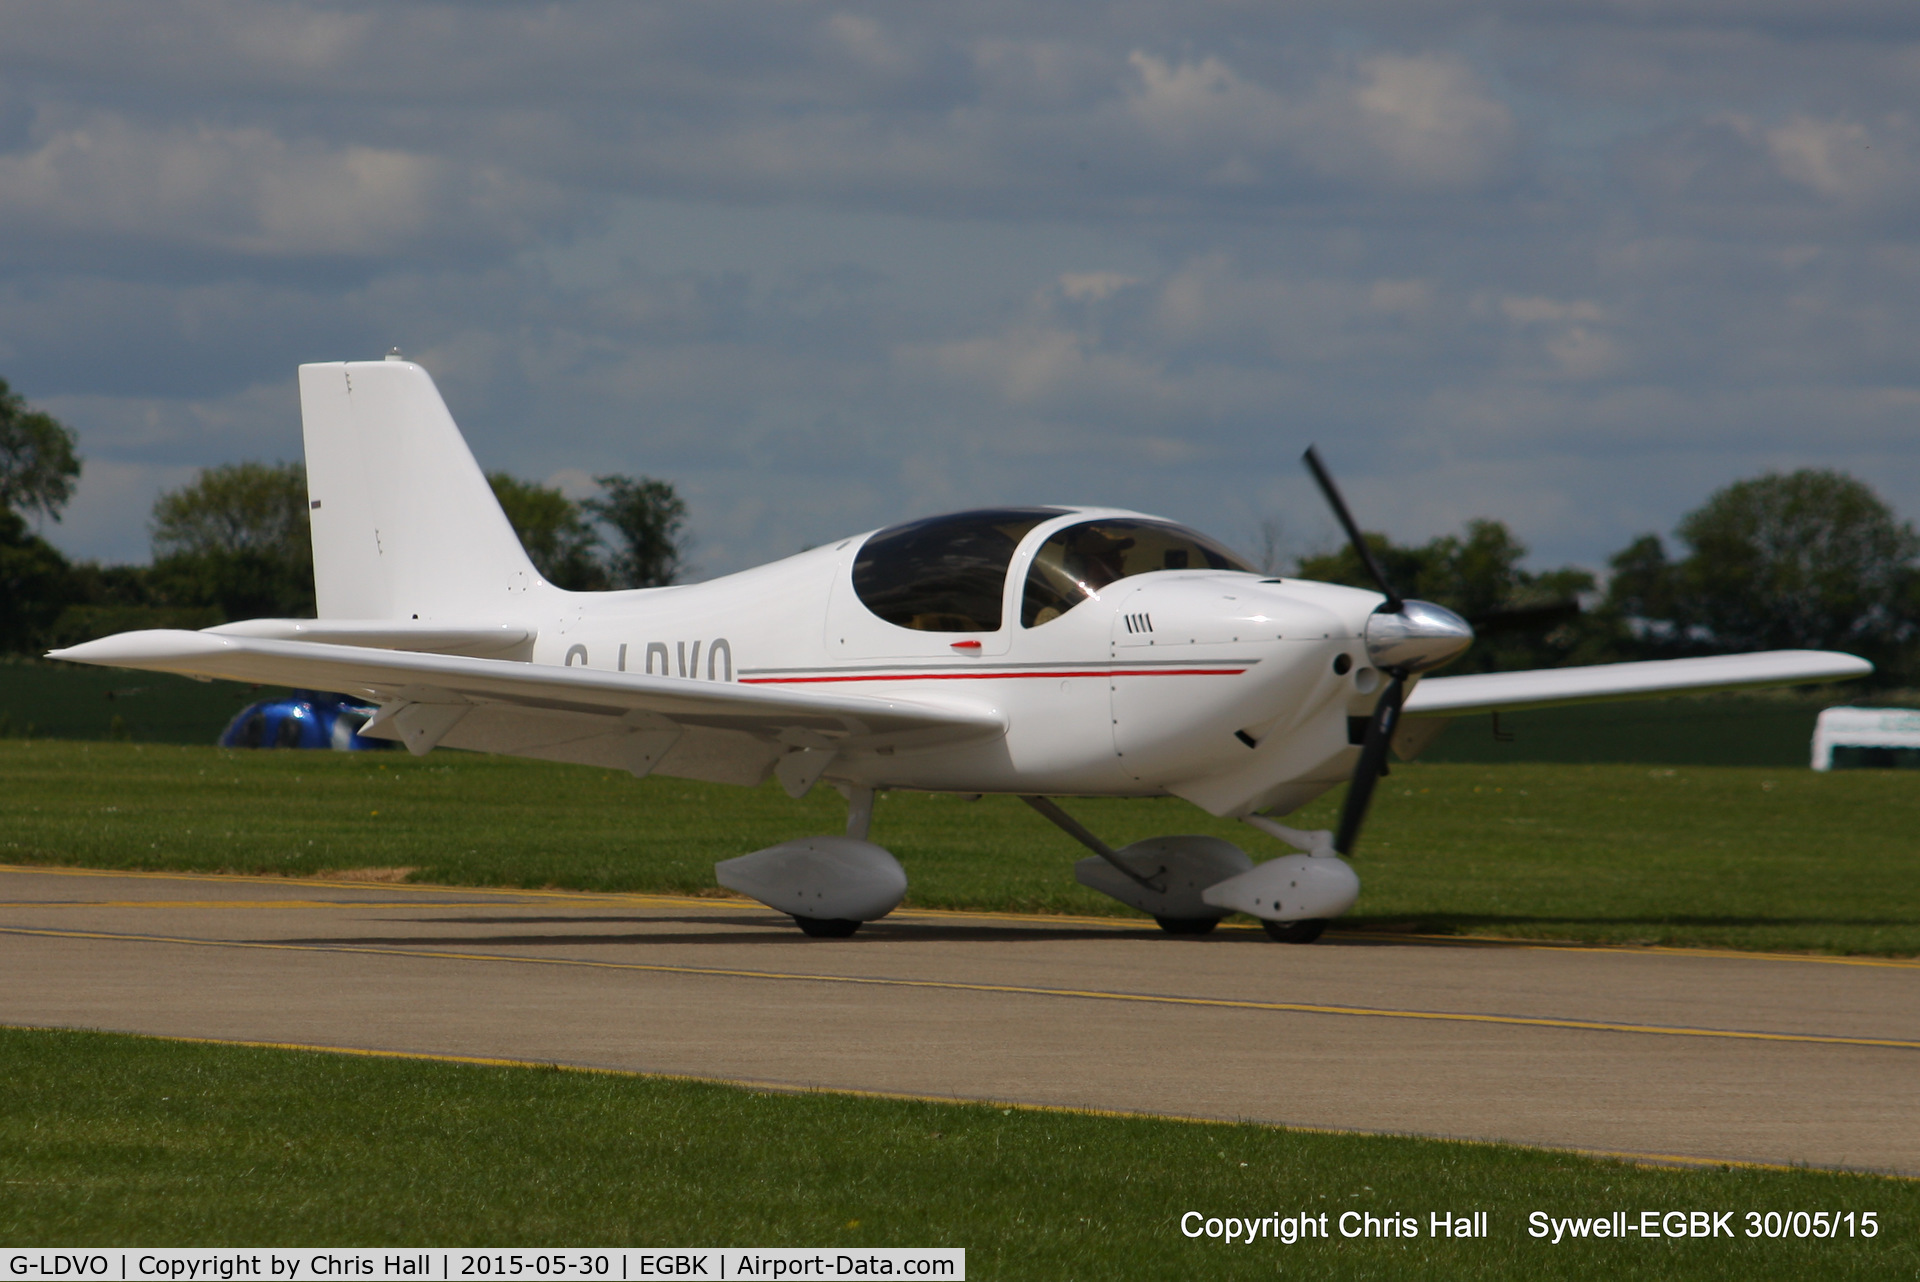 G-LDVO, 2011 Europa XS Tri-Gear C/N PFA 247-13254, at Aeroexpo 2015